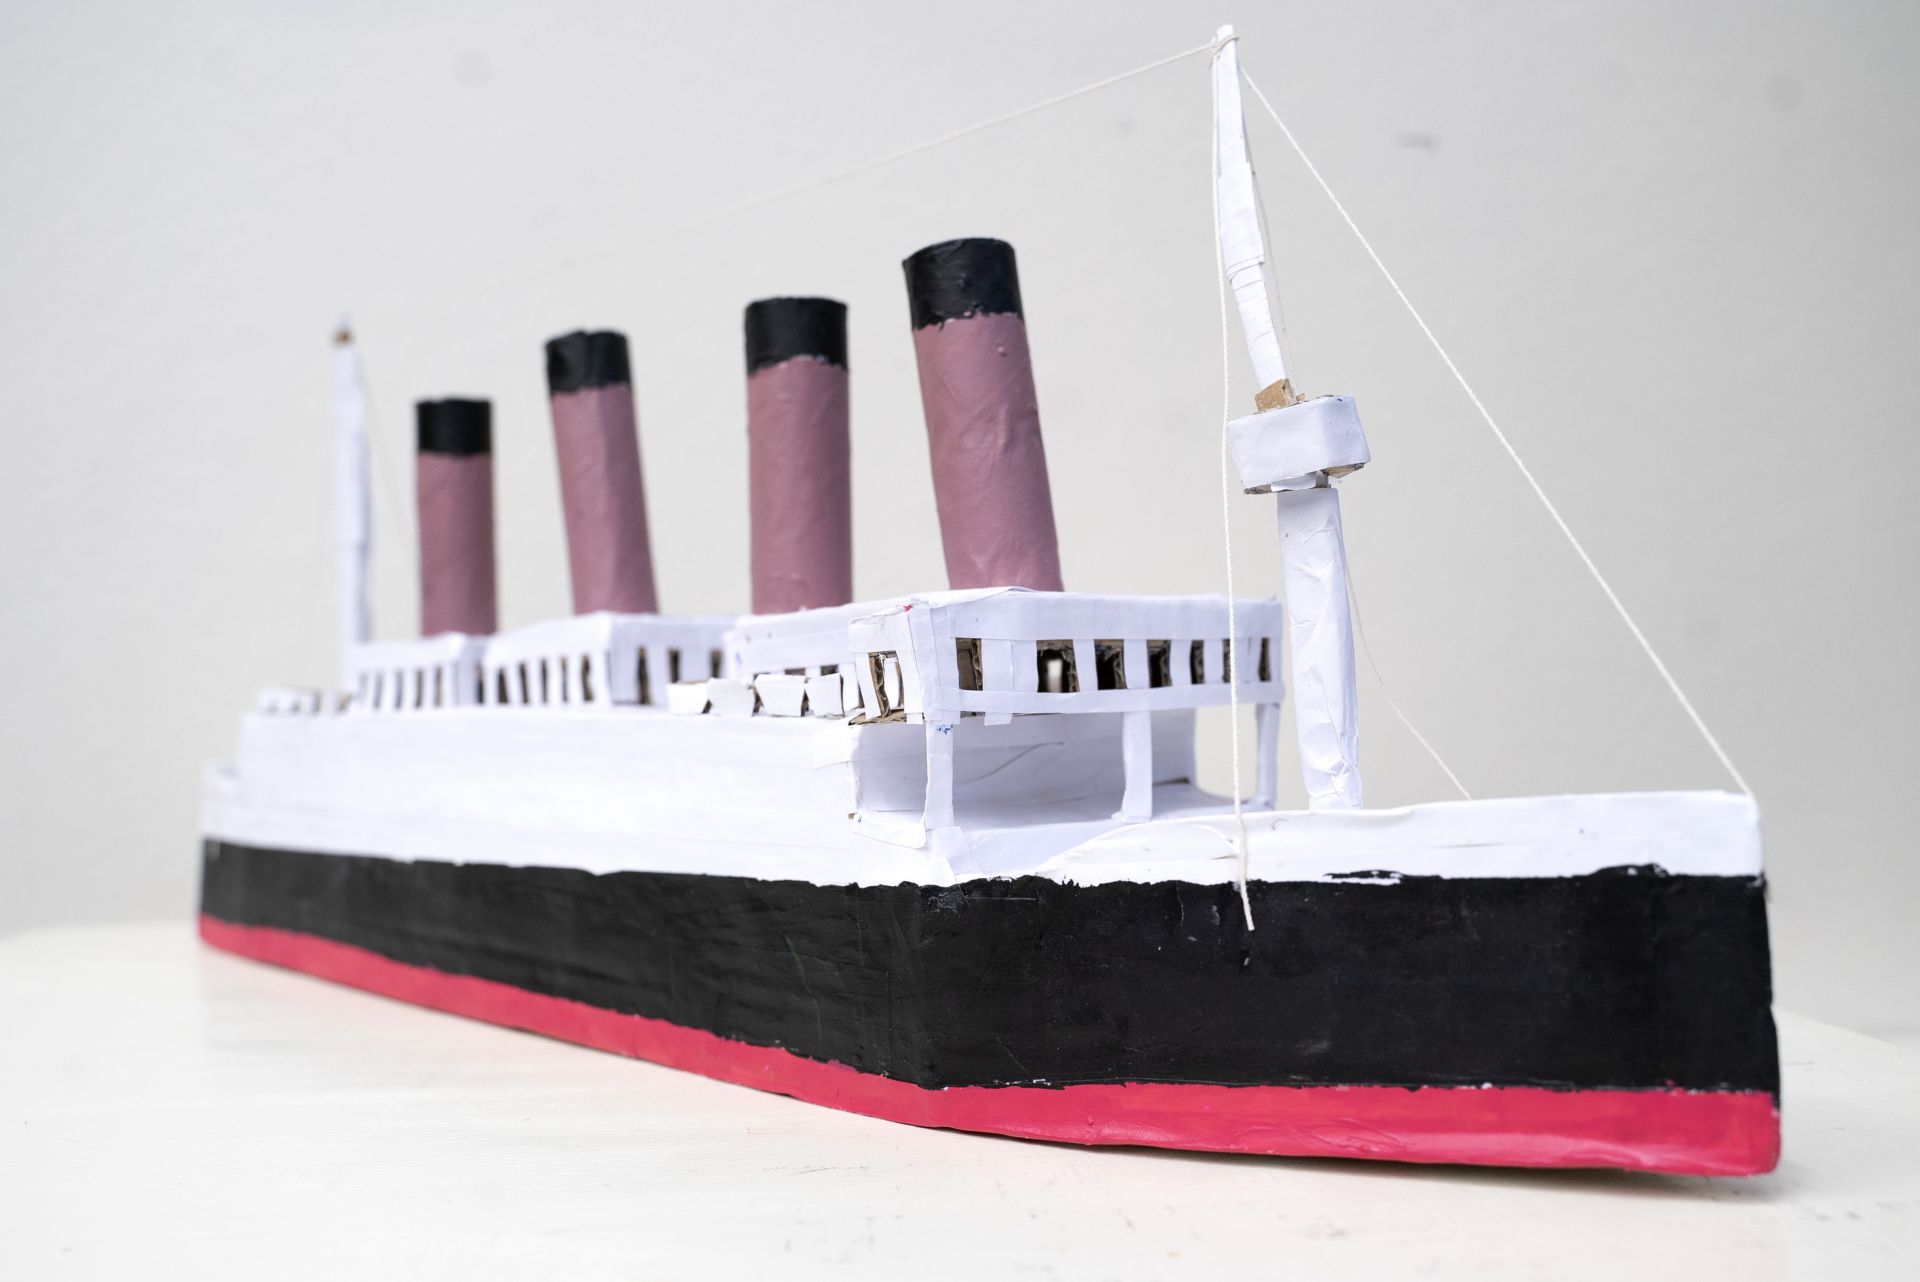 Pienoismalli laivasta RMS Titanic. Malli on tehty pahvista ja on maalattu laivan väreillä.